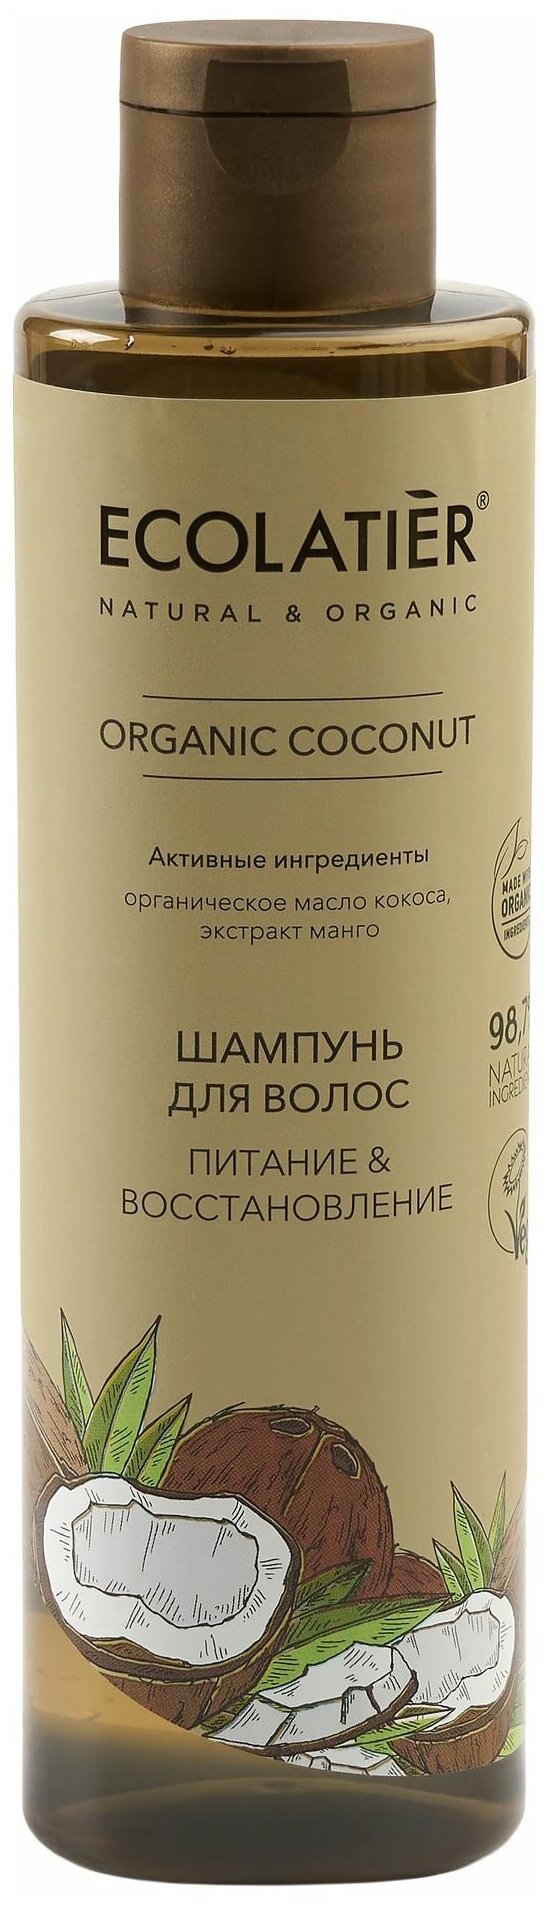 Ecolatier GREEN Шампунь для волос Питание & Восстановление Серия ORGANIC COCONUT, 250 мл